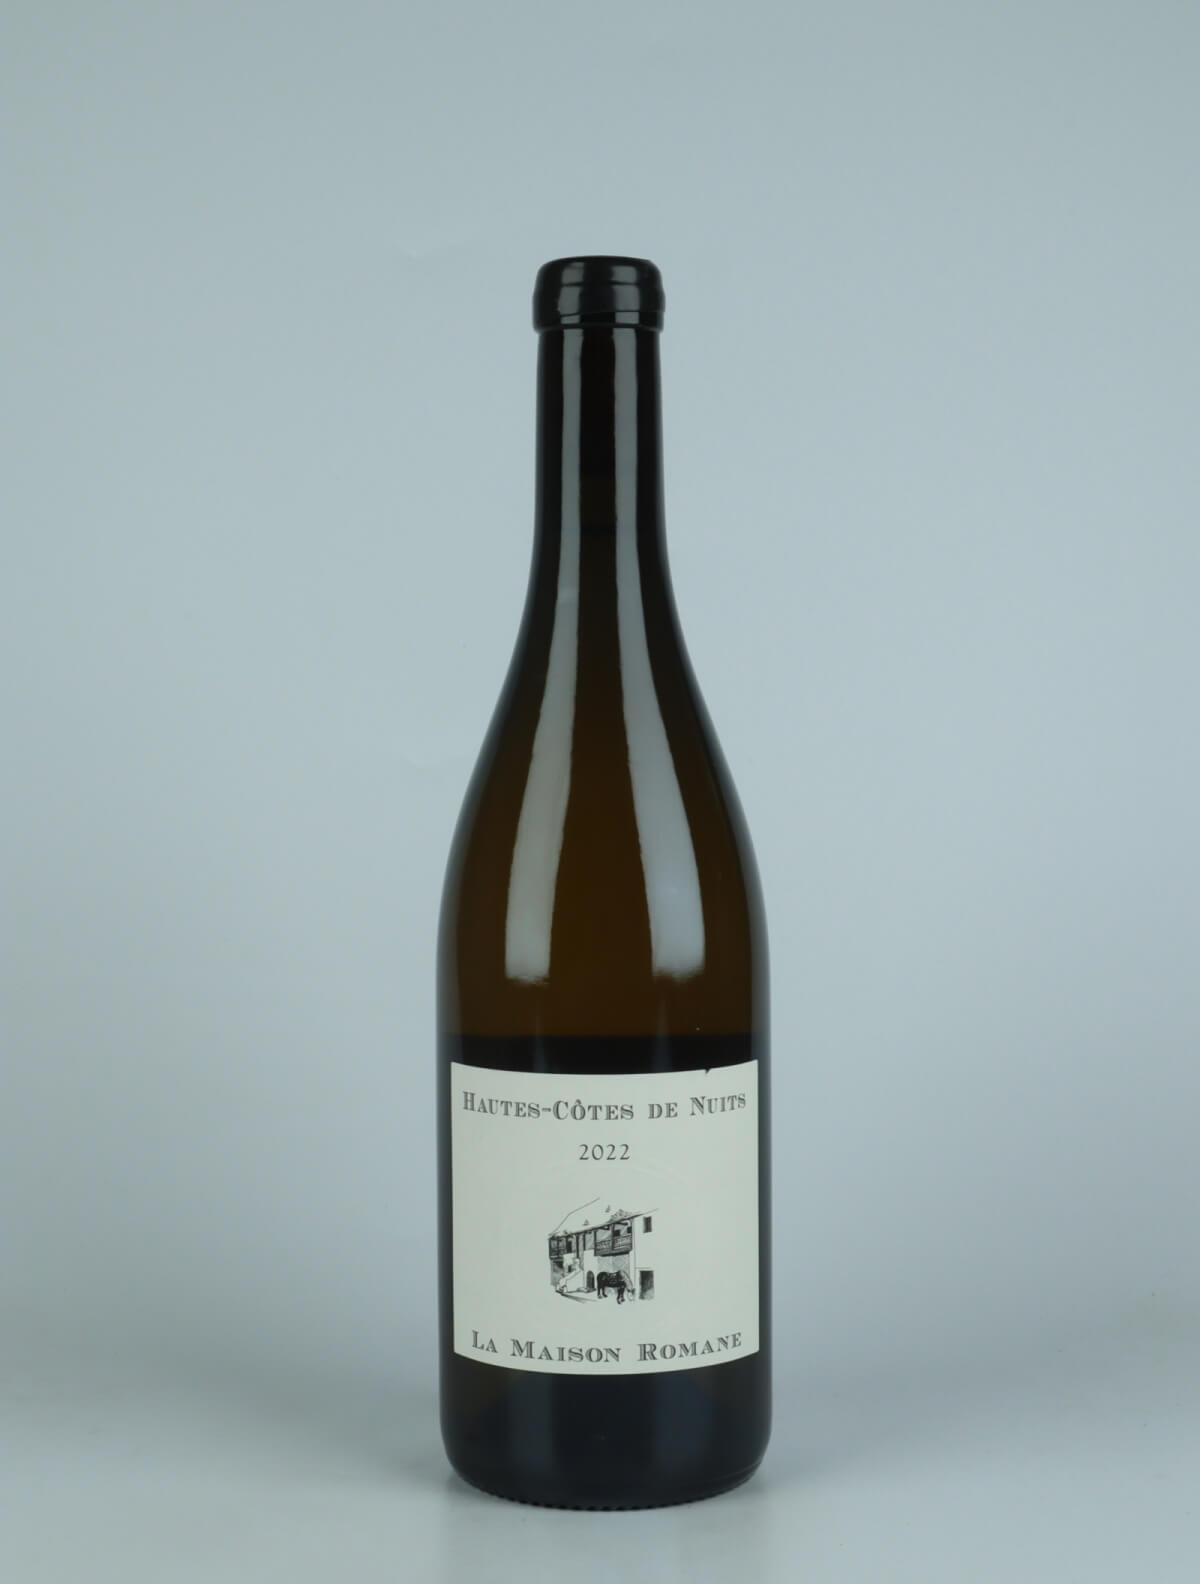 A bottle 2022 Hautes Côtes de Nuits Blanc White wine from La Maison Romane, Burgundy in France